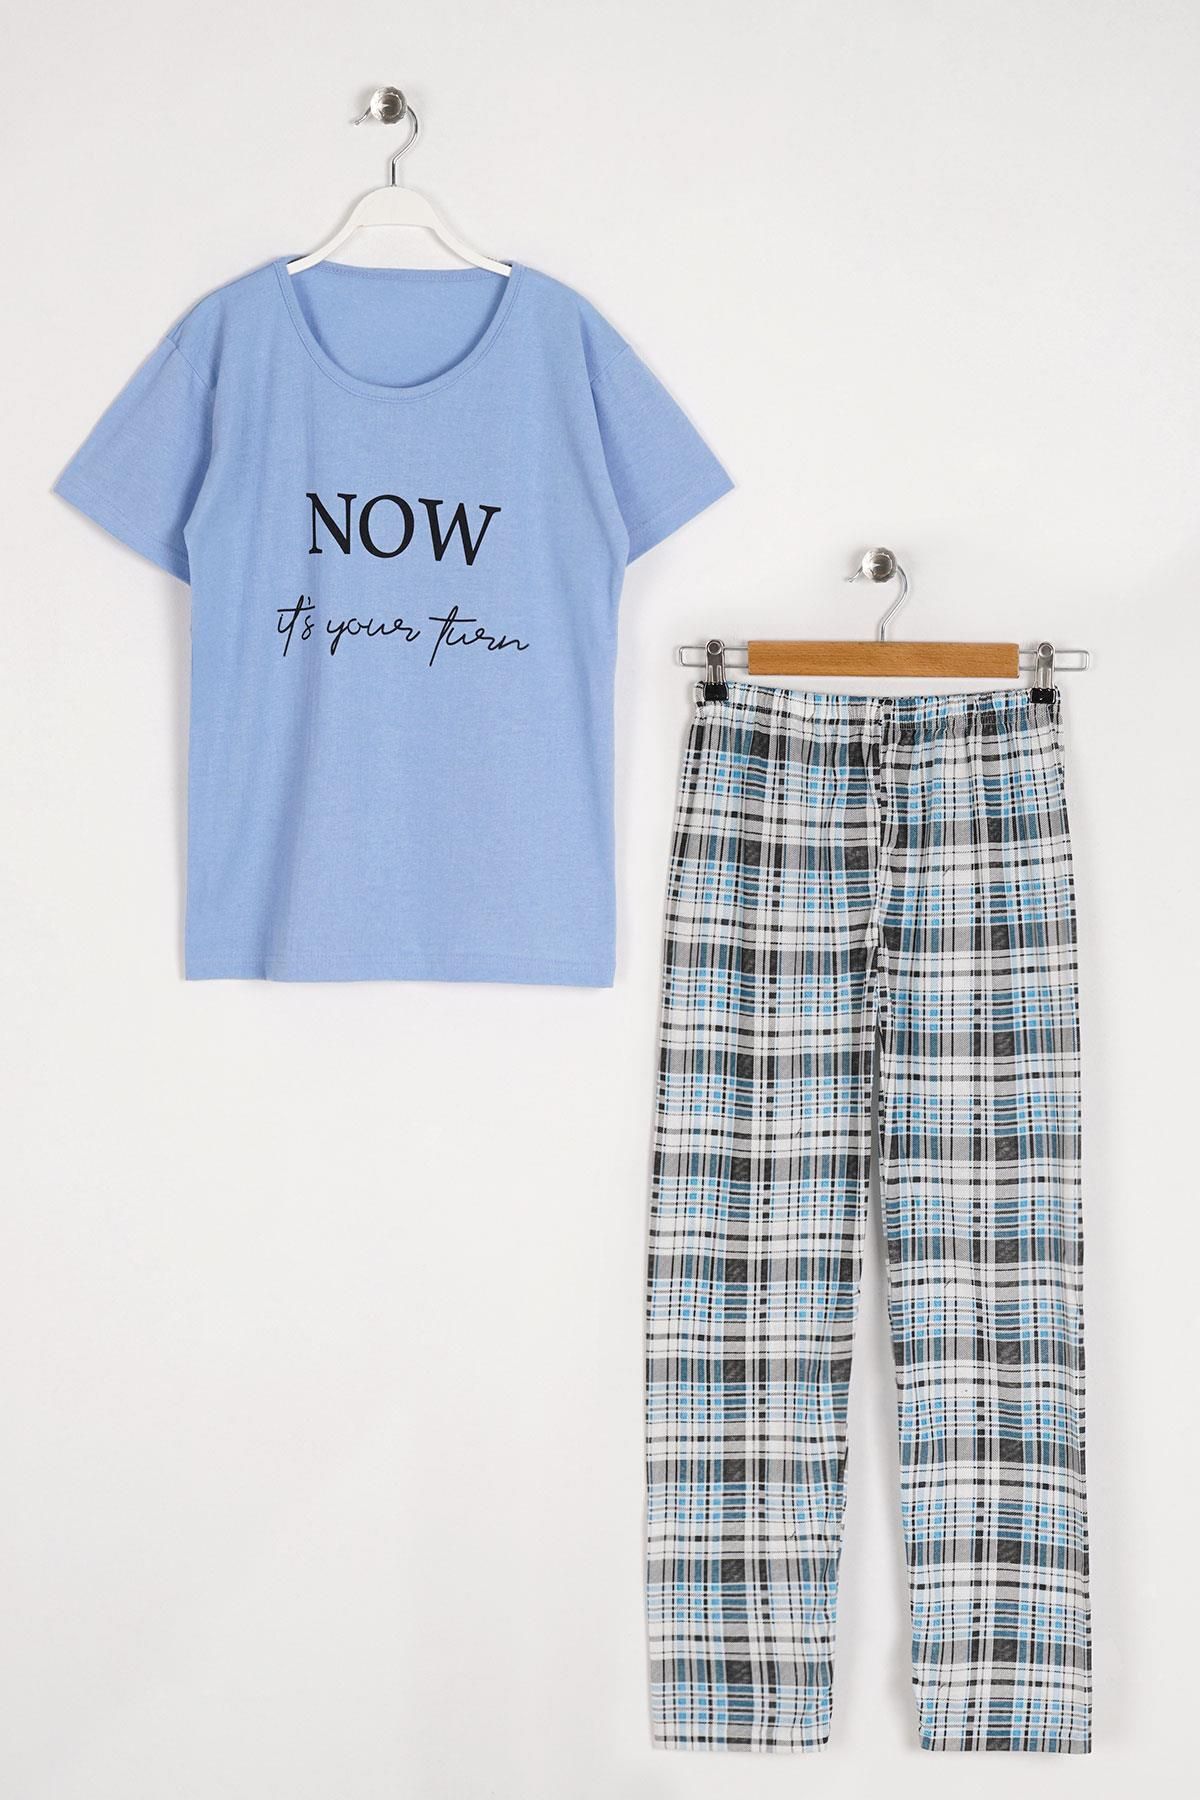 EMINNA Kısa Kol Açık Mavi Renk Kadın Pijama Takımı